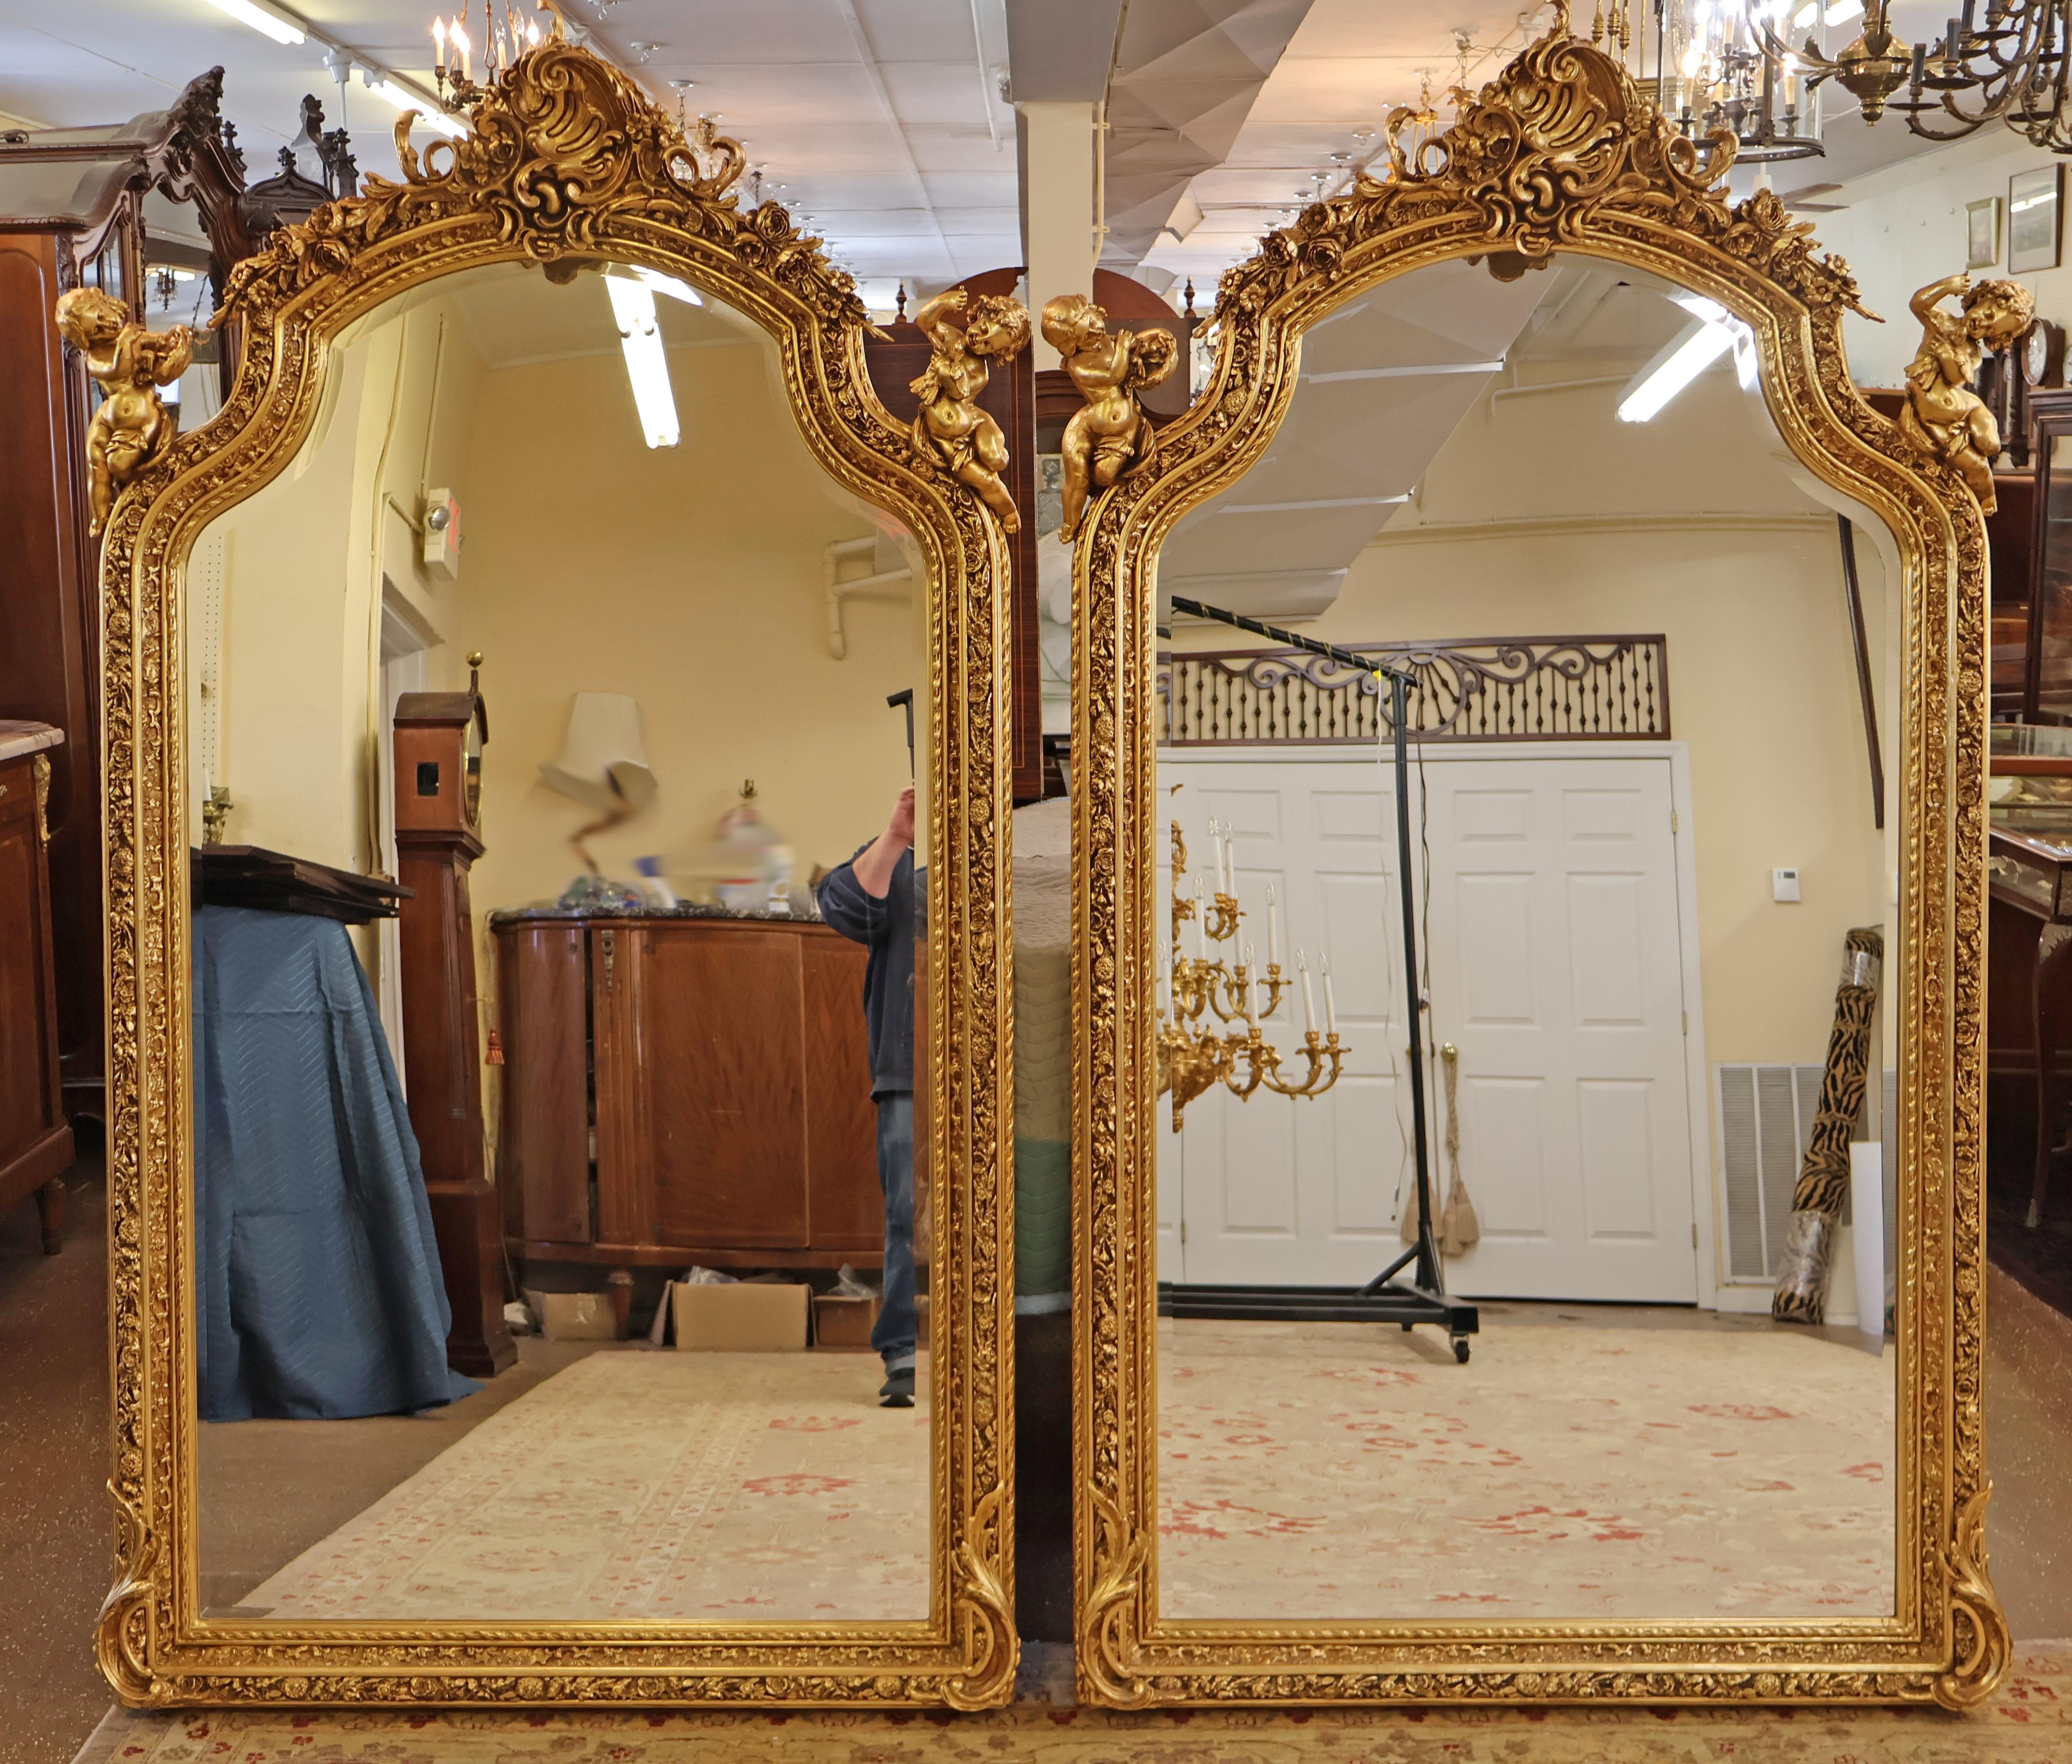 Paire de miroirs biseautés de style Louis XVI français, dorés et ornés d'un chérubin putti 

Dimensions : 85